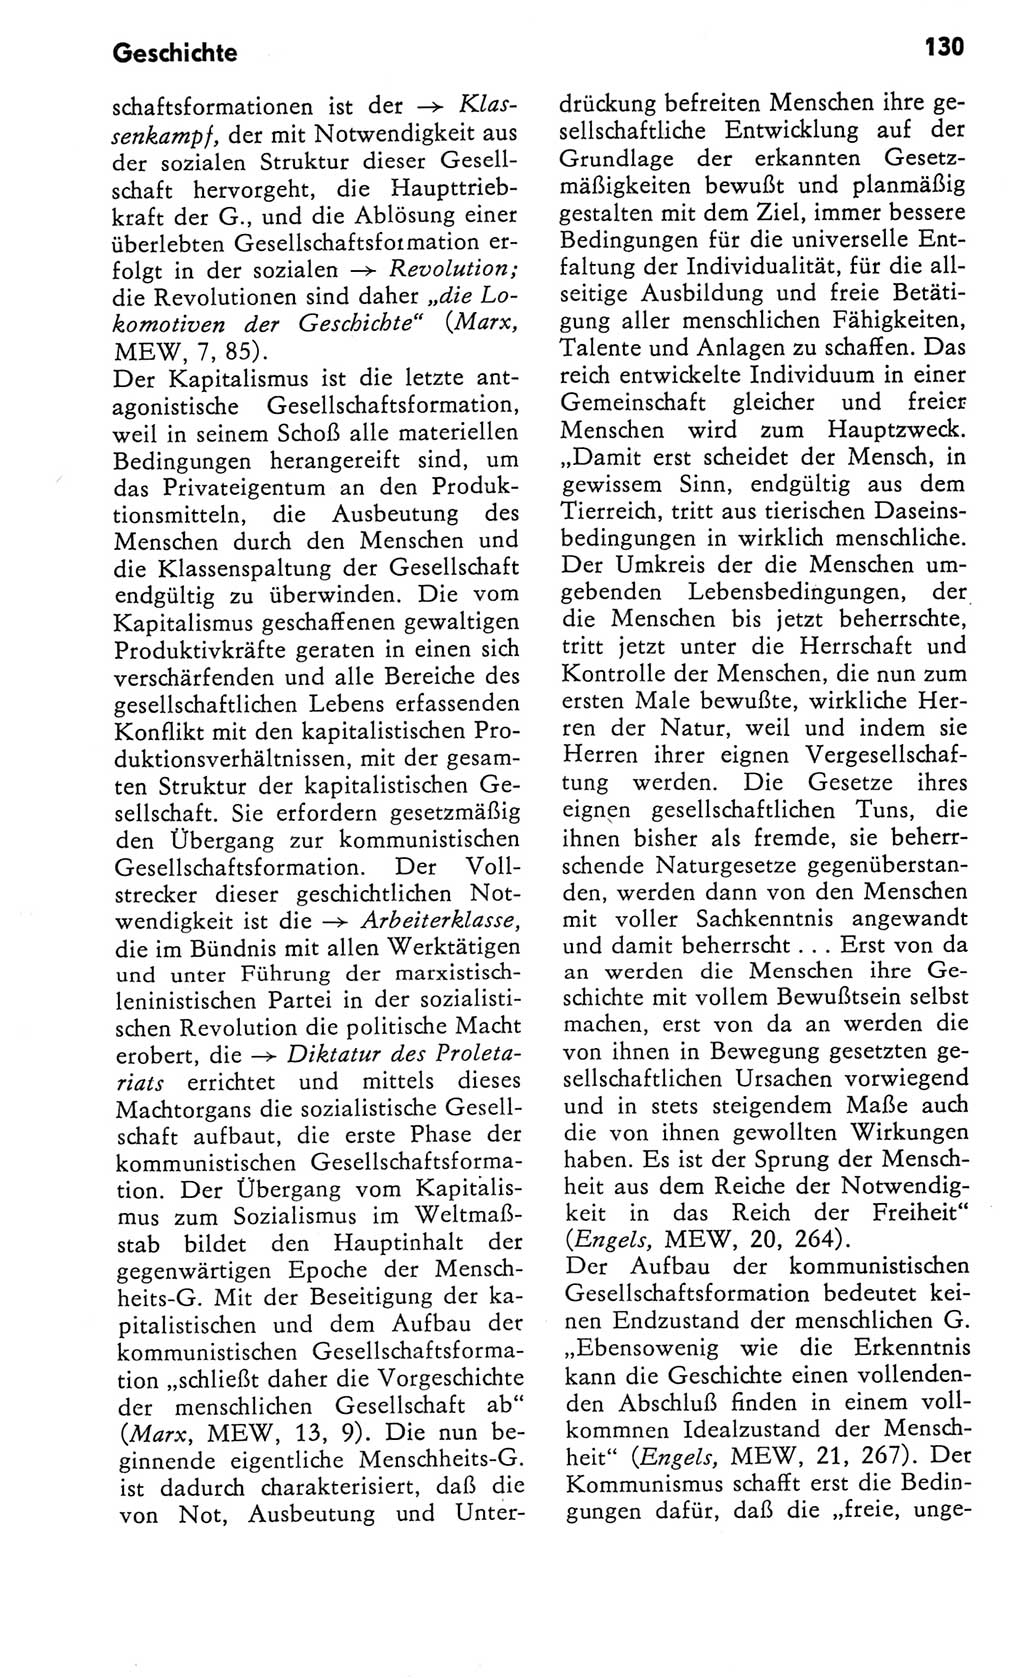 Kleines Wörterbuch der marxistisch-leninistischen Philosophie [Deutsche Demokratische Republik (DDR)] 1982, Seite 130 (Kl. Wb. ML Phil. DDR 1982, S. 130)